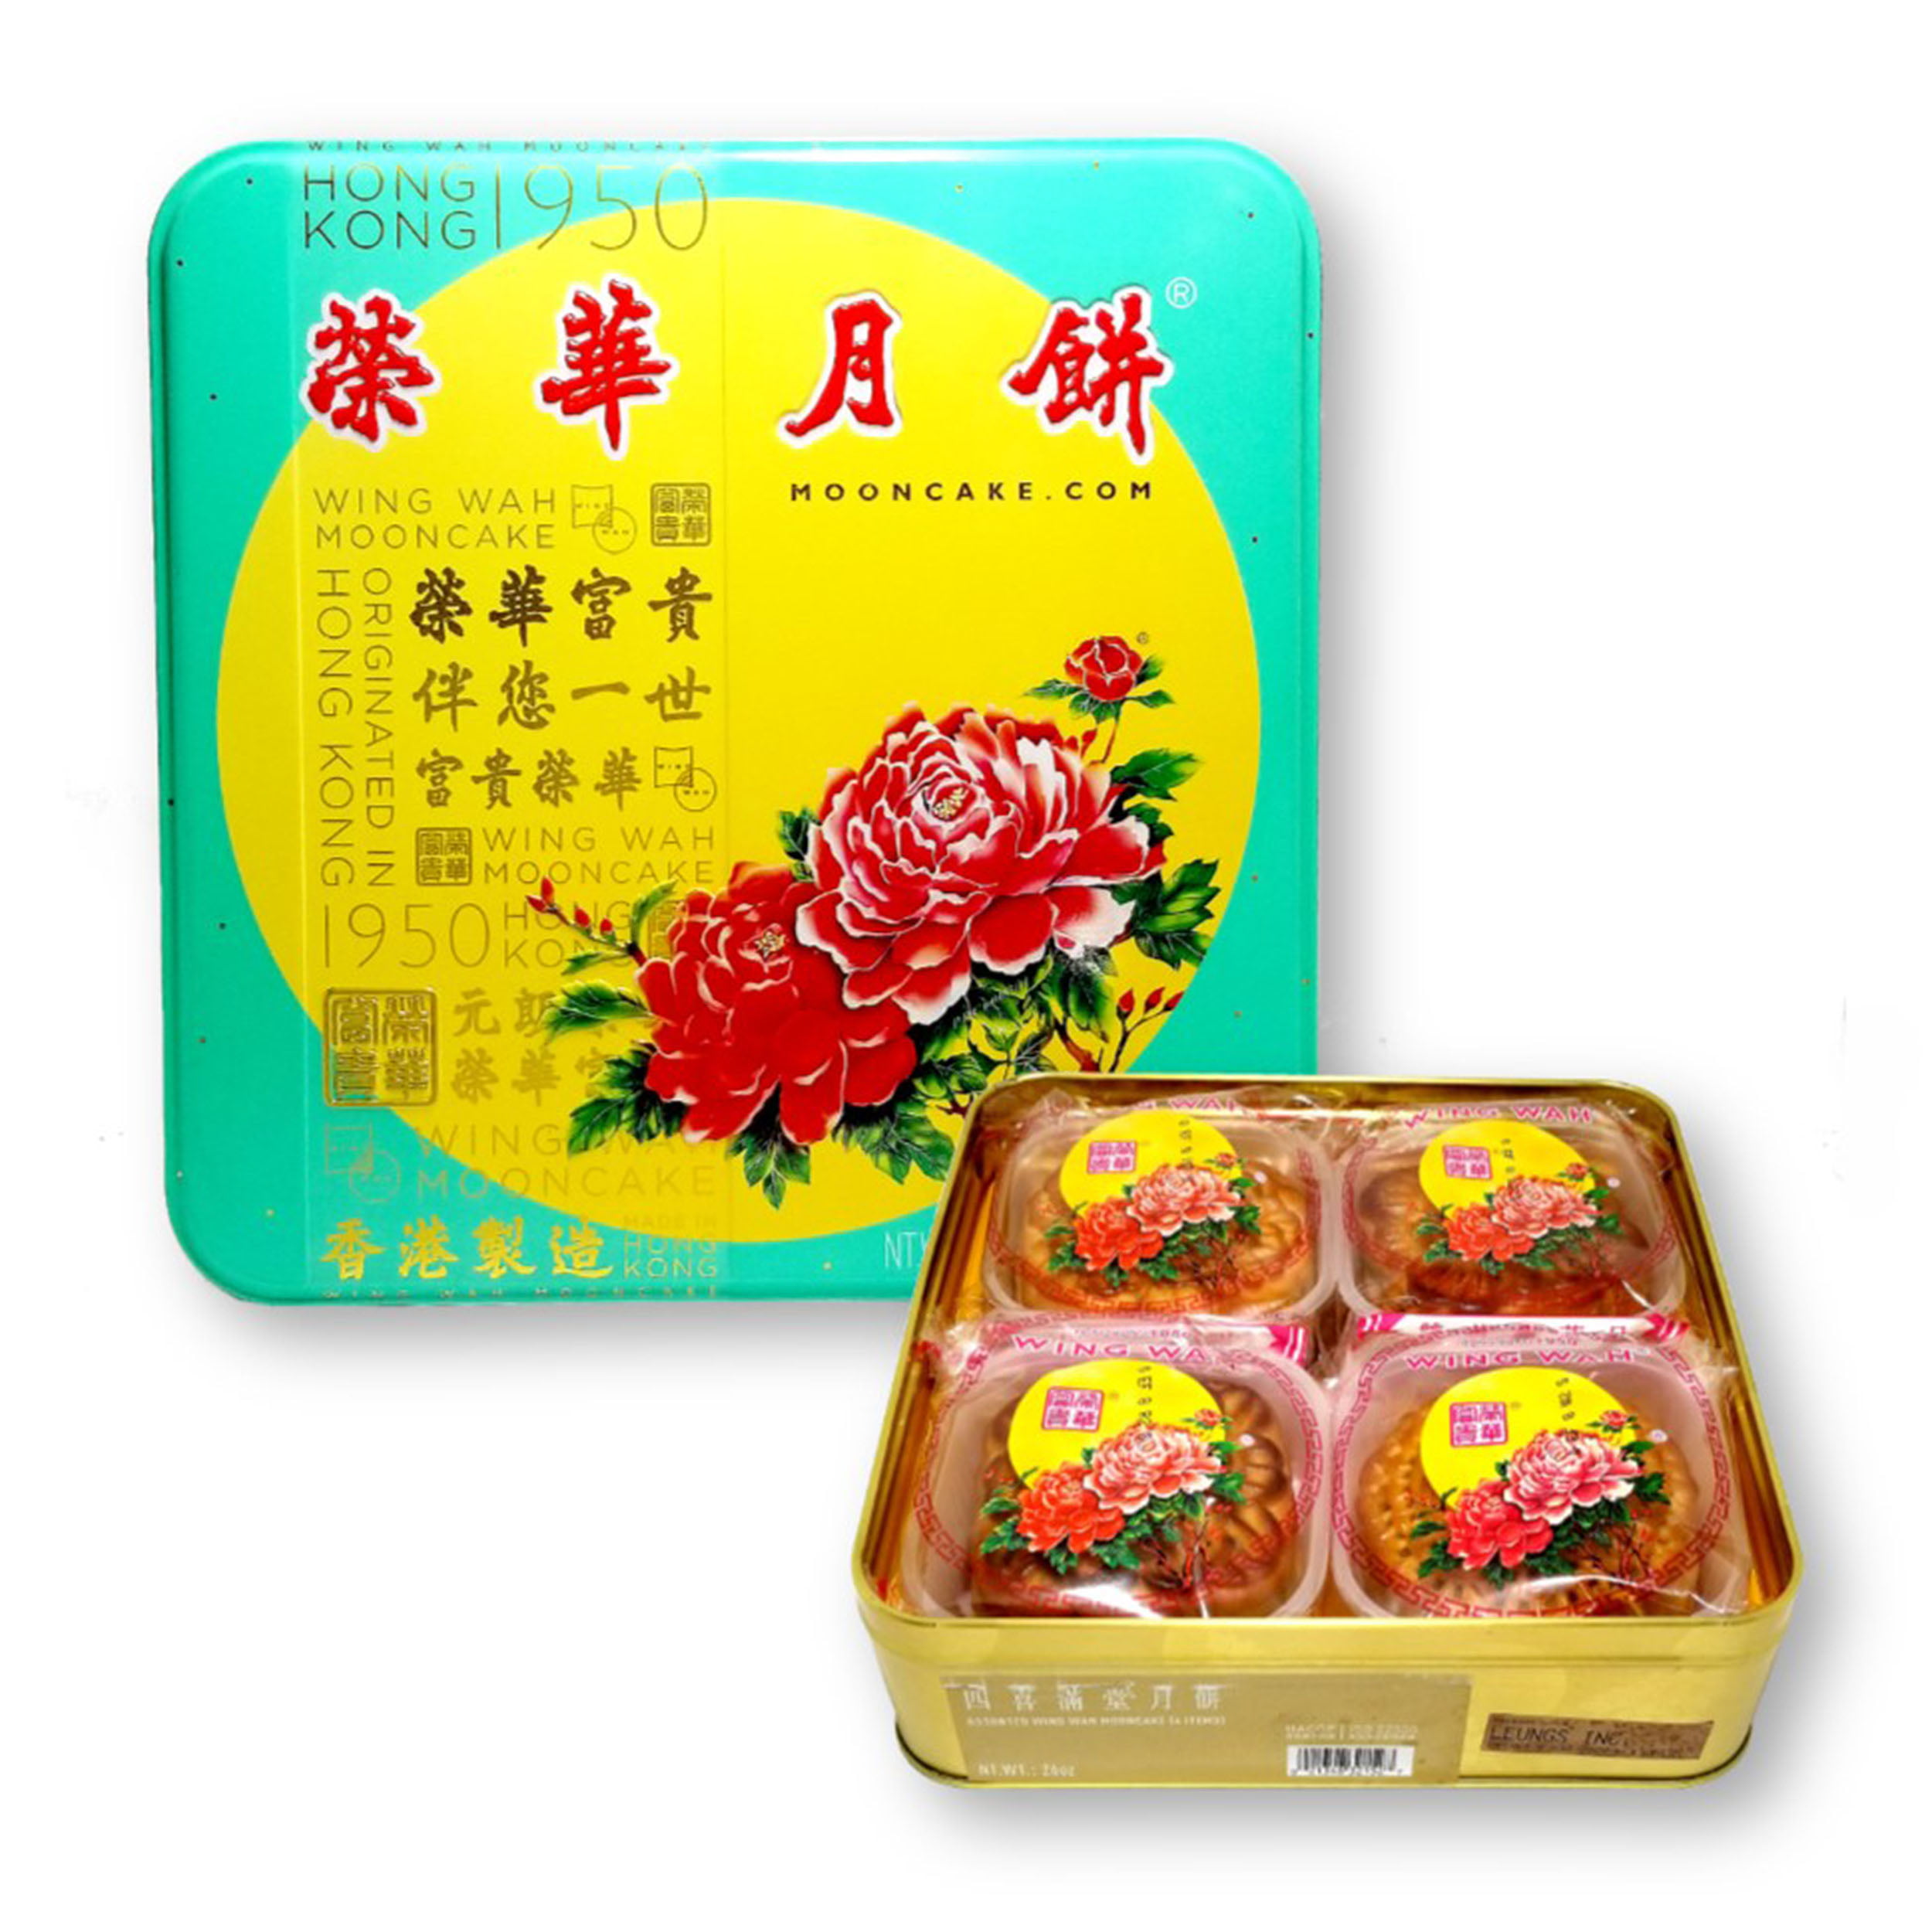 QUANTUM Microwavable Lunch Box 6pcs - Tak Shing Hong